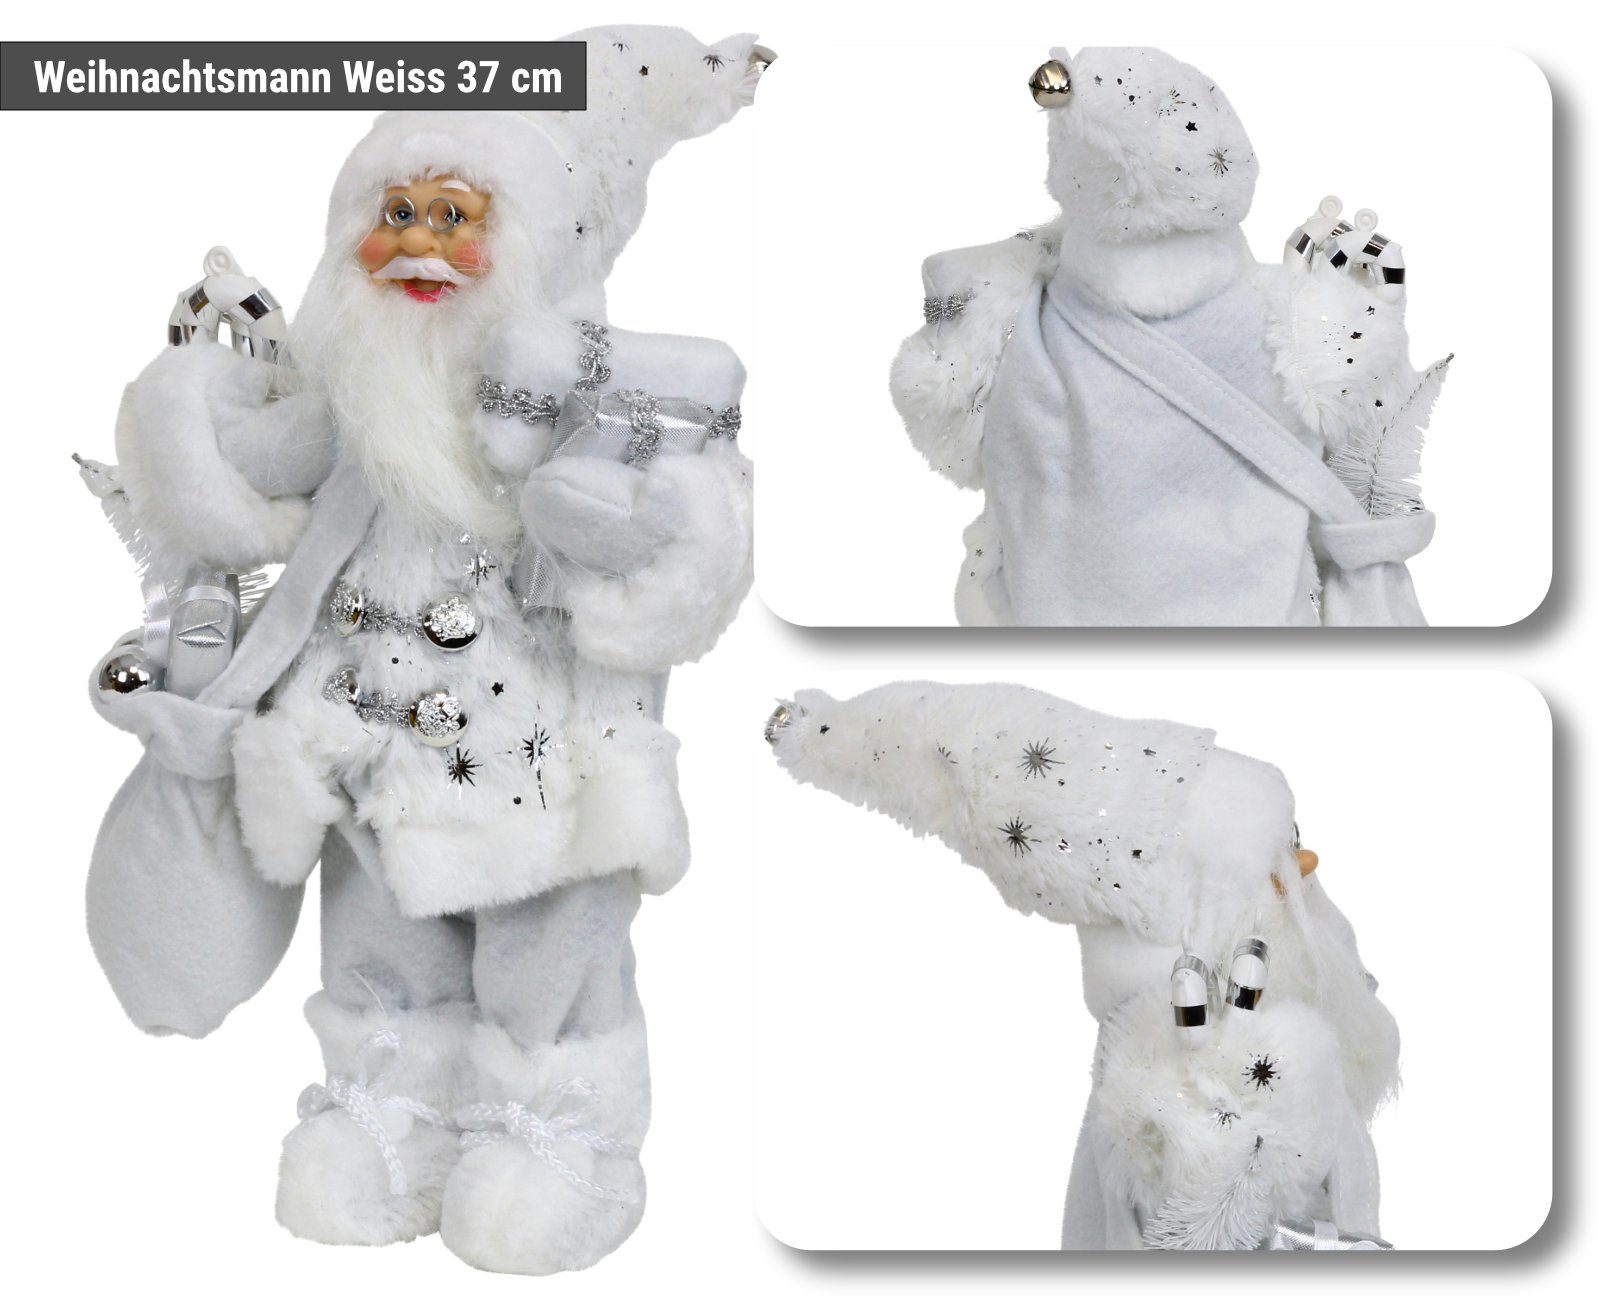 HAGO Weihnachtsfigur Weihnachtsmann Nikolaus Figur stehend mit Geschenkesack Weihnachtsdeko weiß